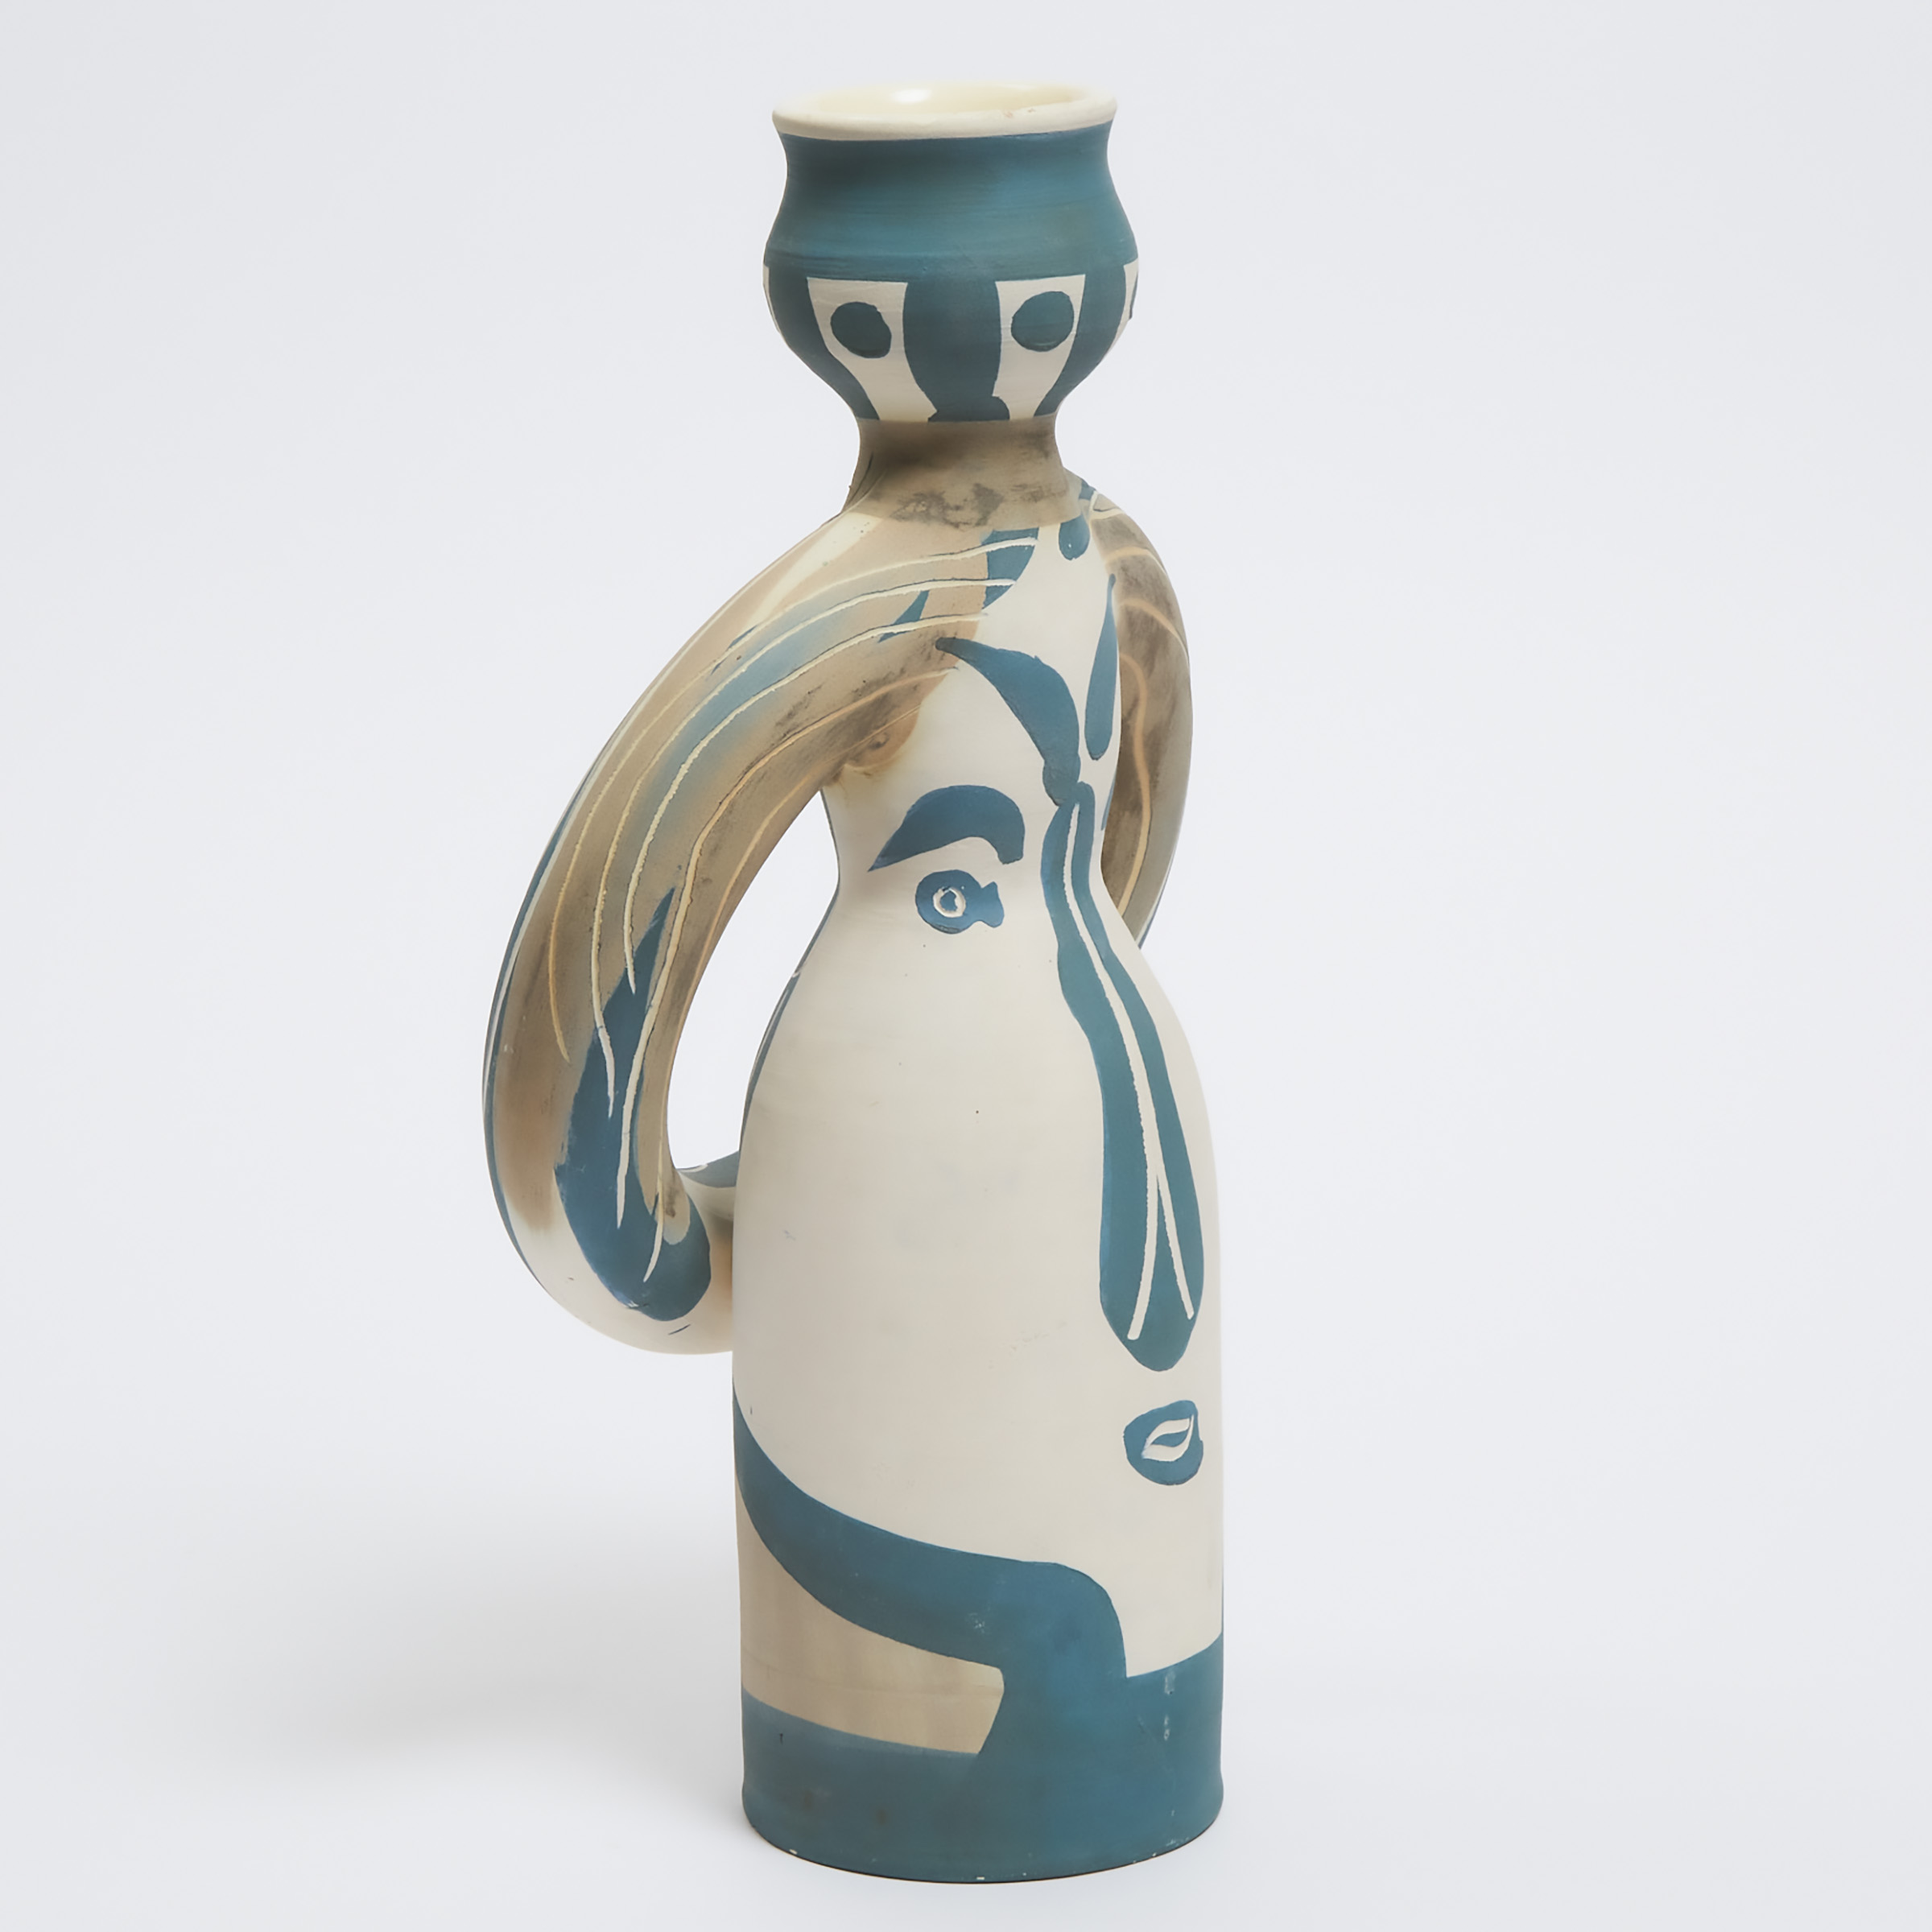 'Lampe Femme', Pablo Picasso (1881-1973), Ceramic Vase, 58/100, c.1955